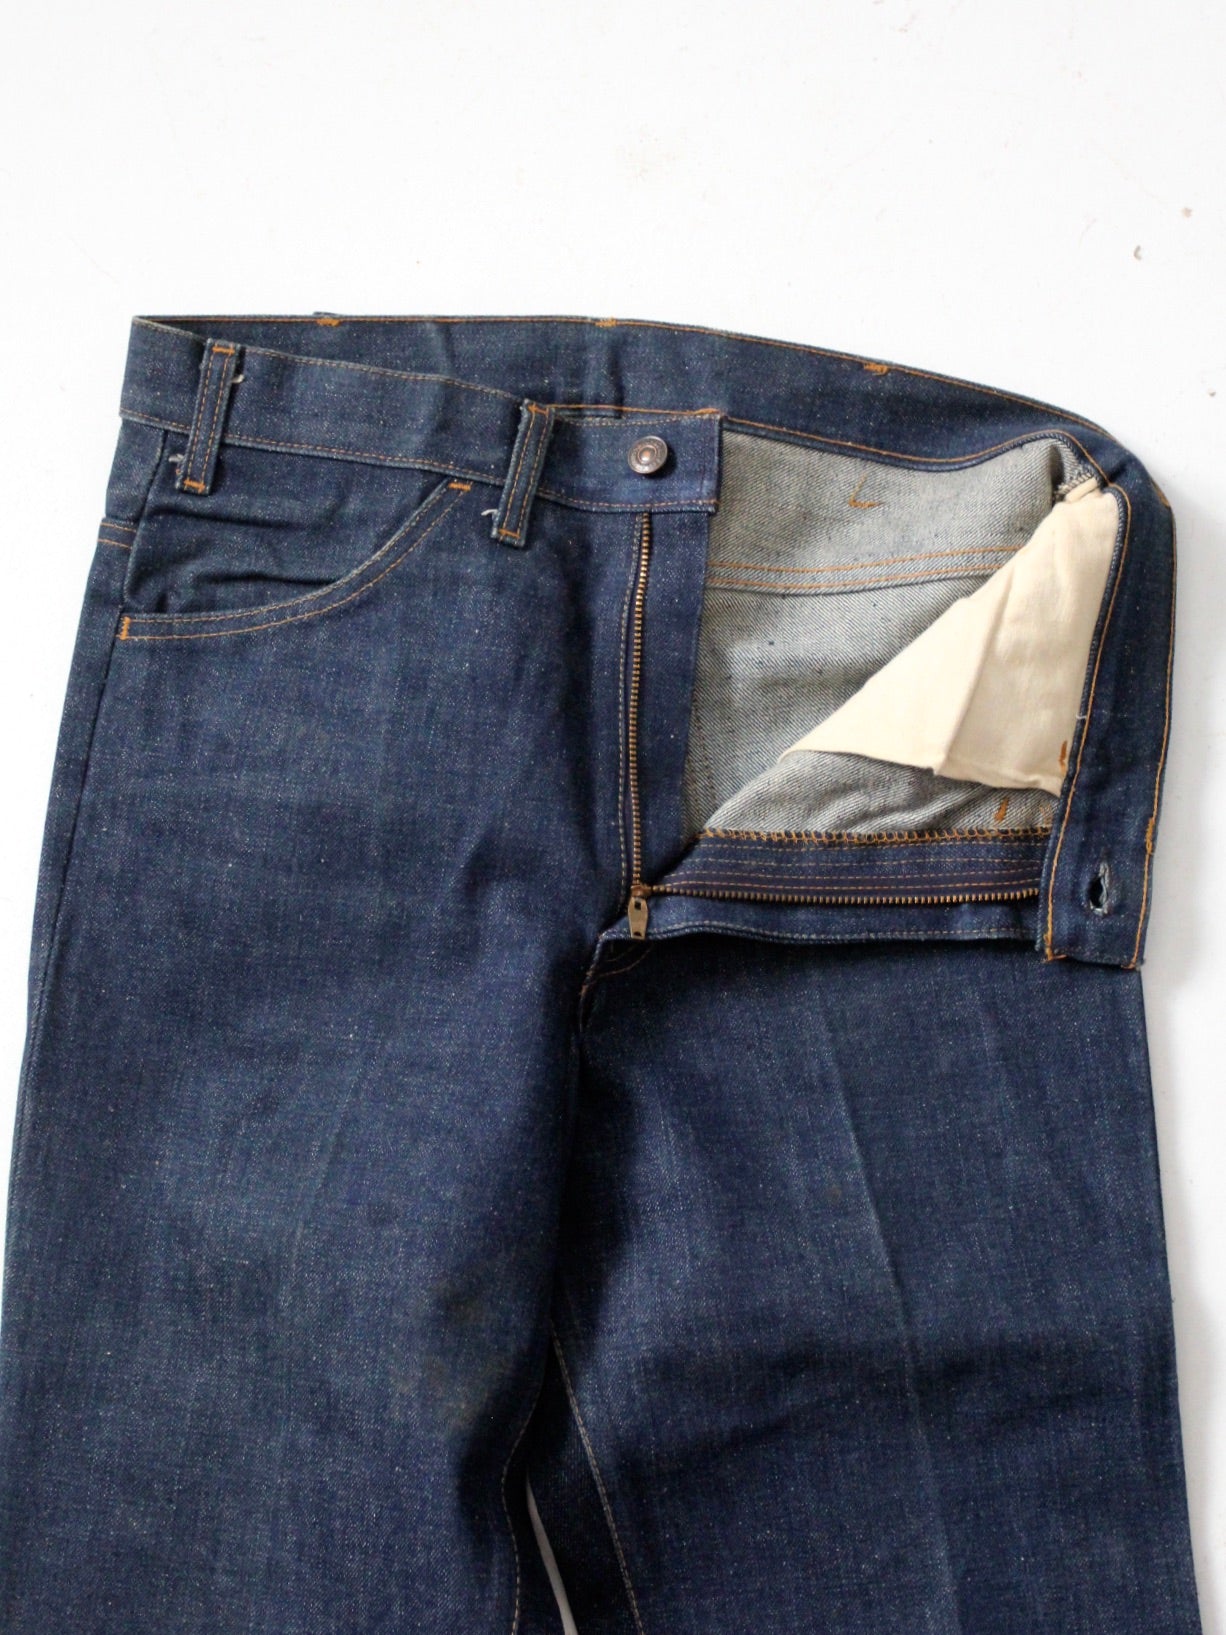 vintage Levis 646 jeans,  32 x 37.5